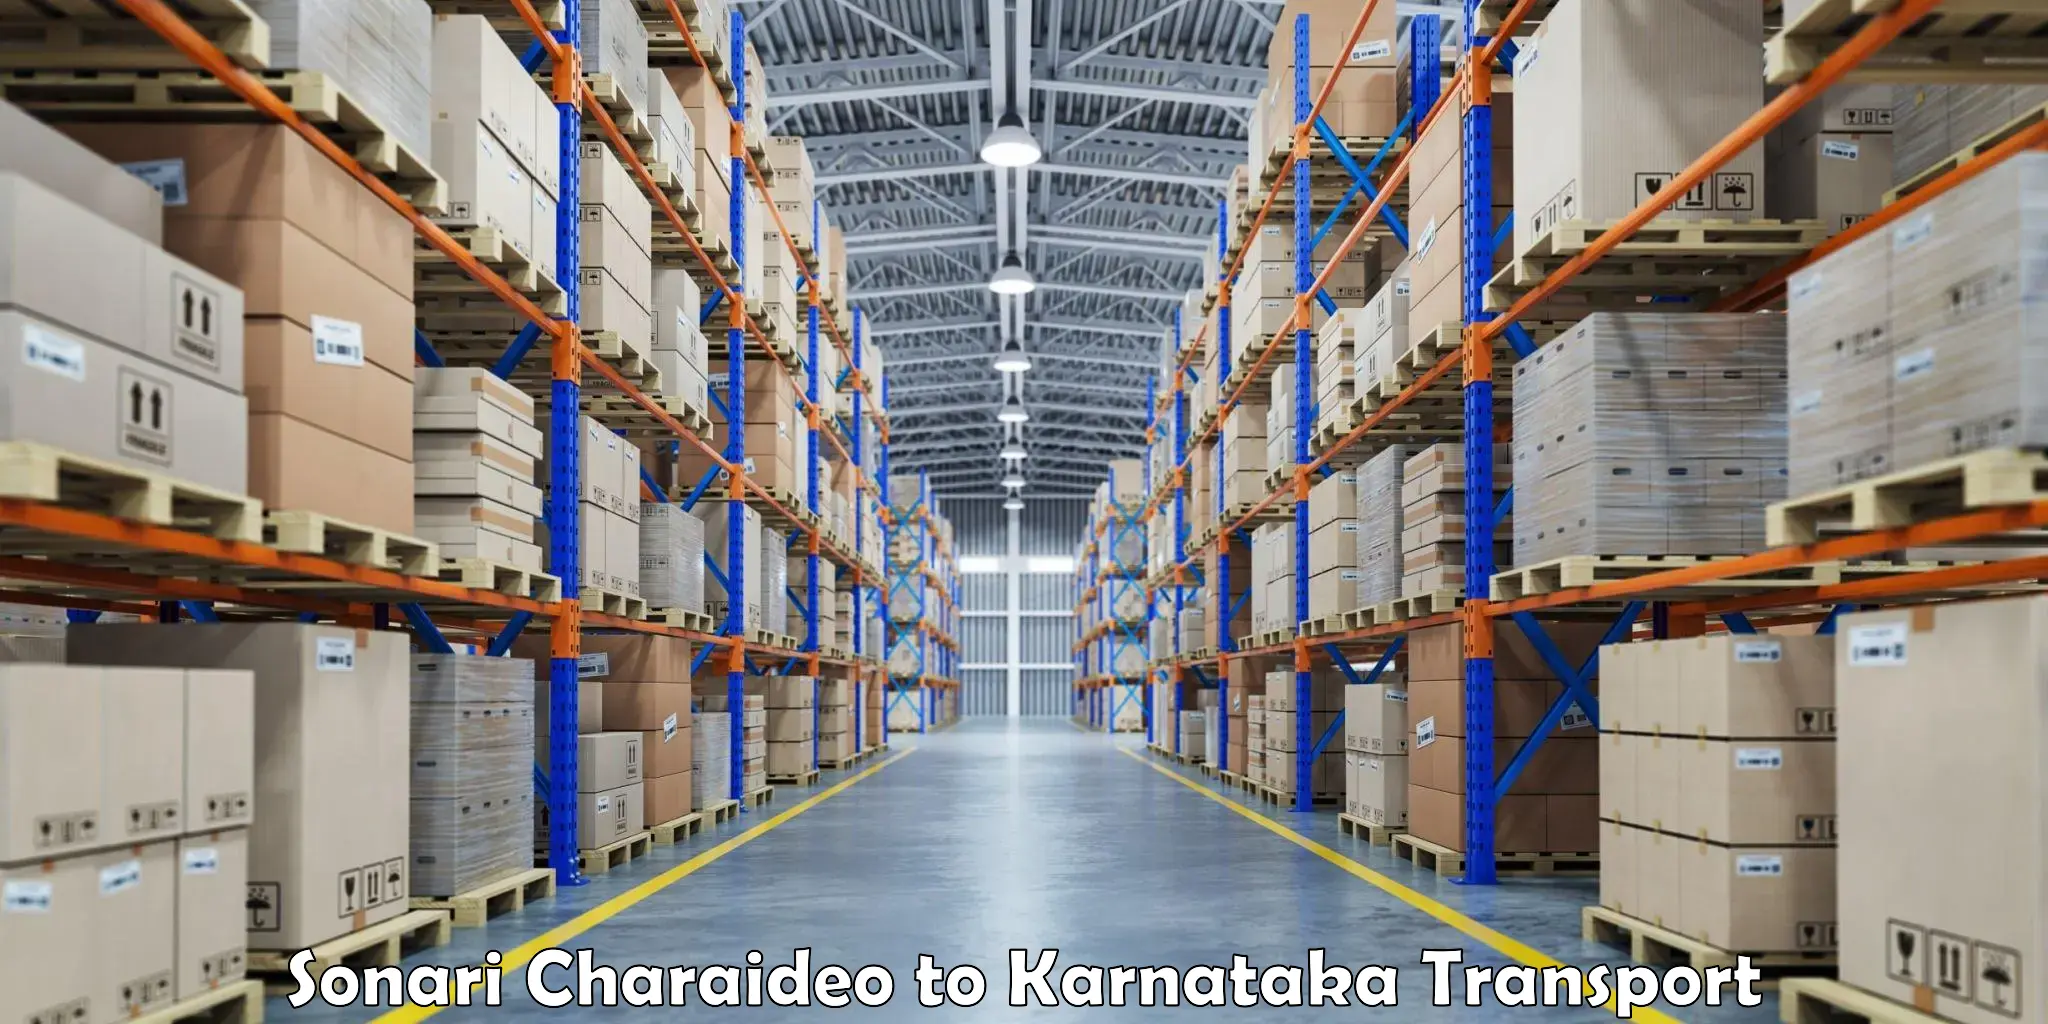 Truck transport companies in India Sonari Charaideo to Thirthahalli